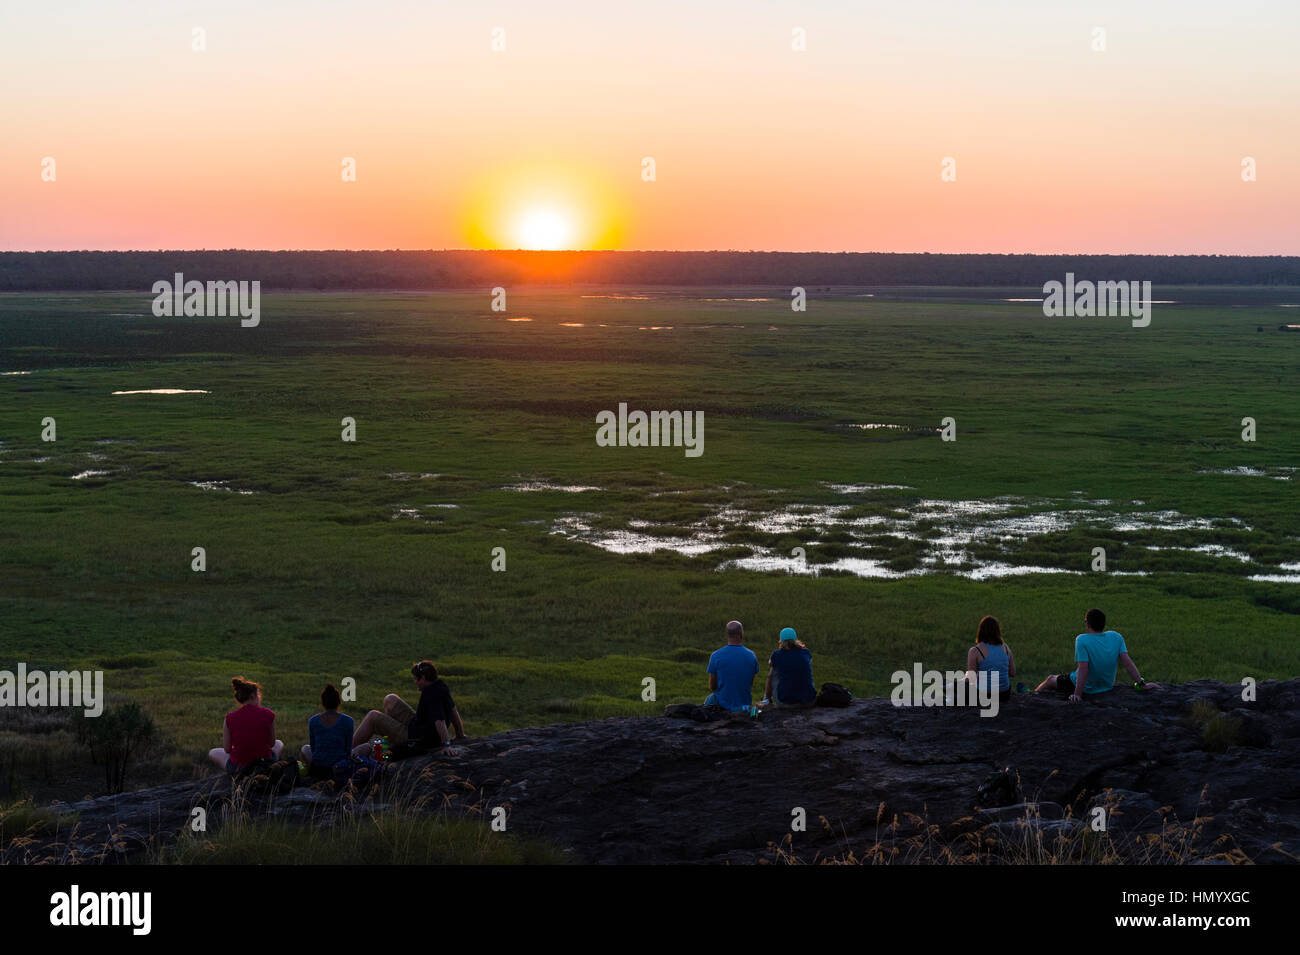 Les touristes regarder un célèbre Top Fin, coucher de soleil depuis un escarpement sur une plaine inondable. Banque D'Images